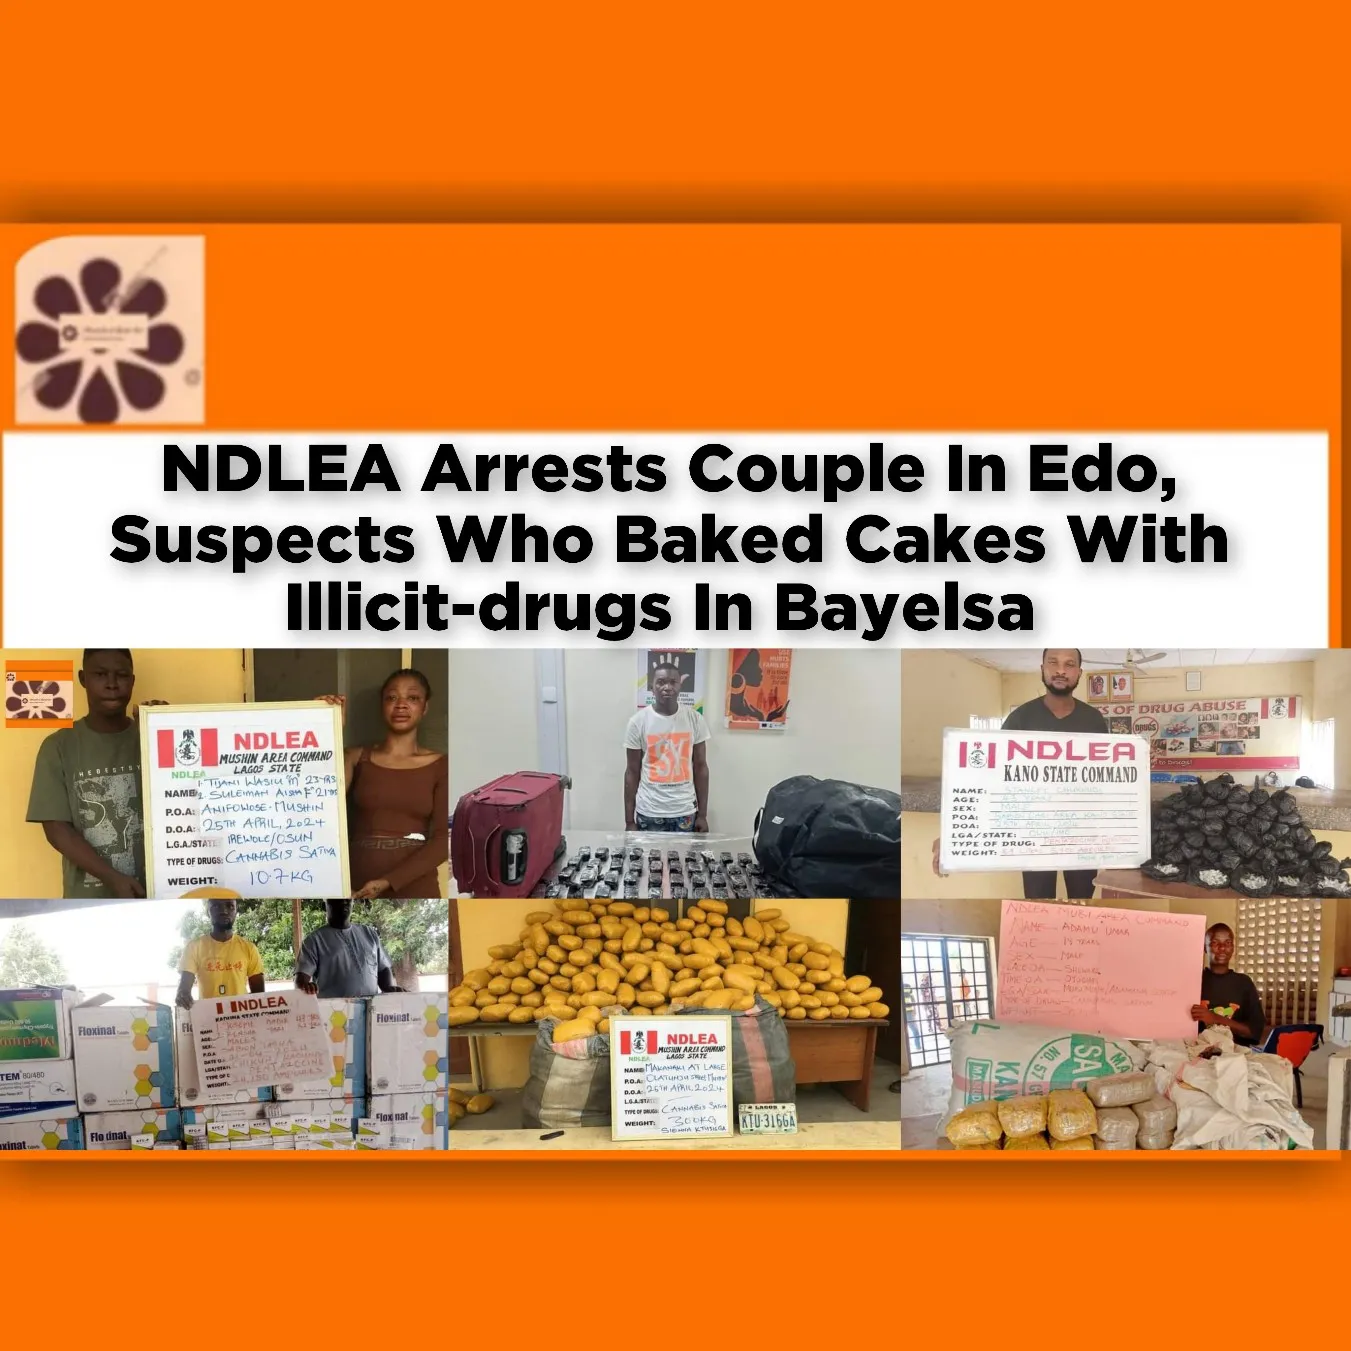 NDLEA Arrests Couple In Edo, Suspects Who Baked Cakes With Illicit-drugs In Bayelsa ~ OsazuwaAkonedo #Dakar